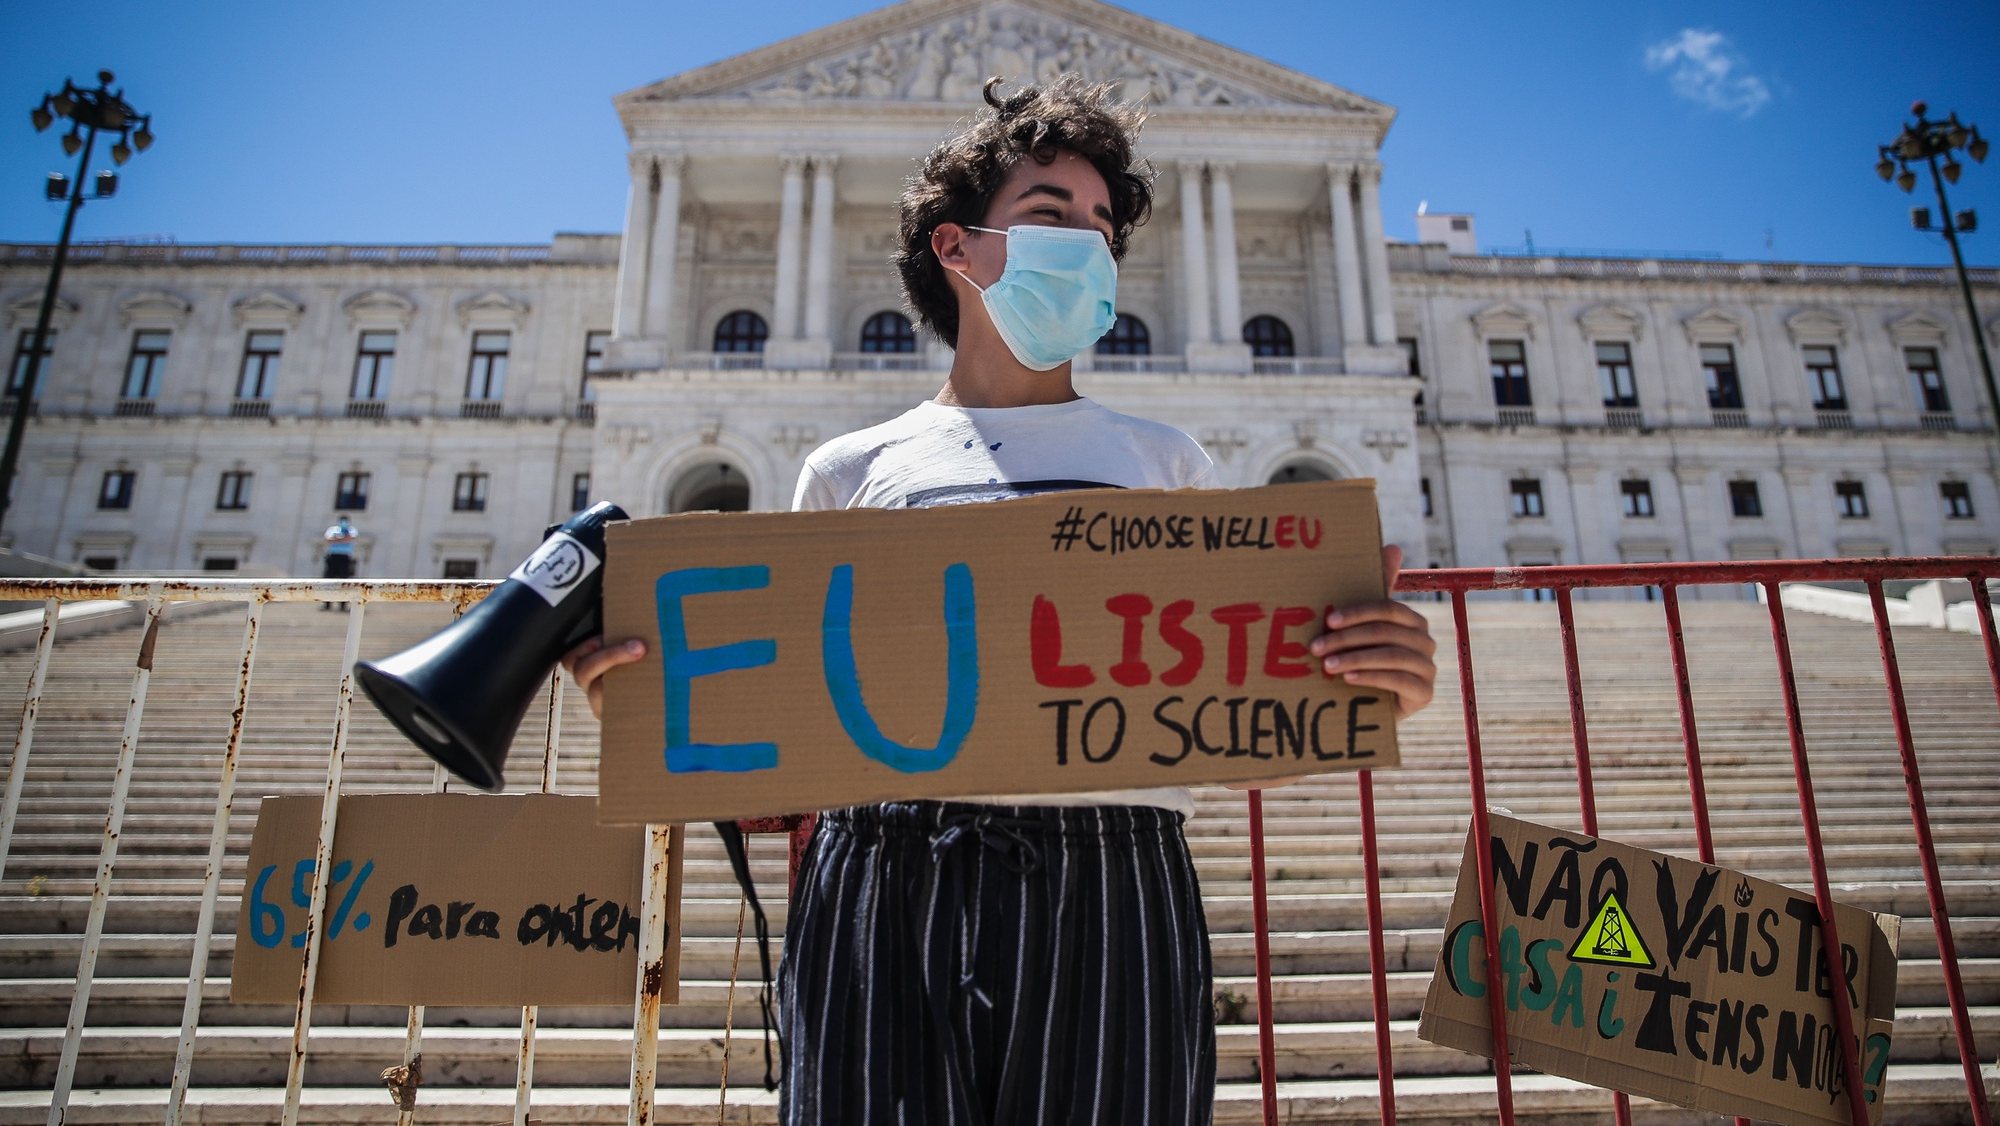 Corrente humana da Greve Climática Estudantil para exigir que a União Europeia atinja o objetivo de uma redução de 65% das emissões até 2030, frente à Assembleia da República, em Lisboa, 16 de junho de 2020. MÁRIO CRUZ/LUSA